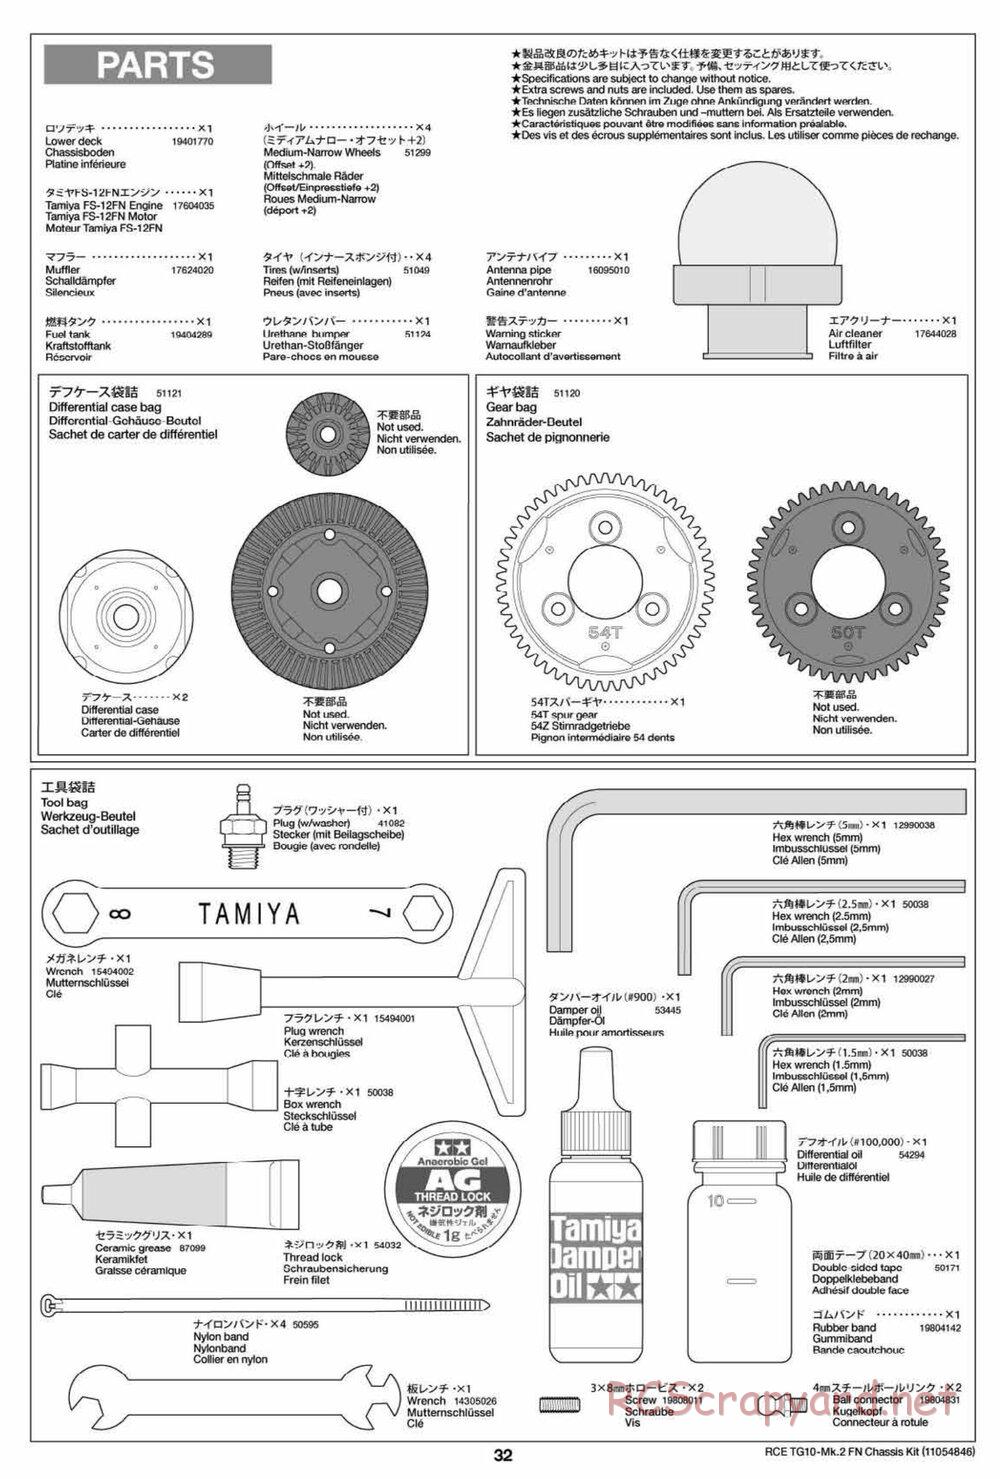 Tamiya - TG10 Mk.2 FN Chassis - Manual - Page 32